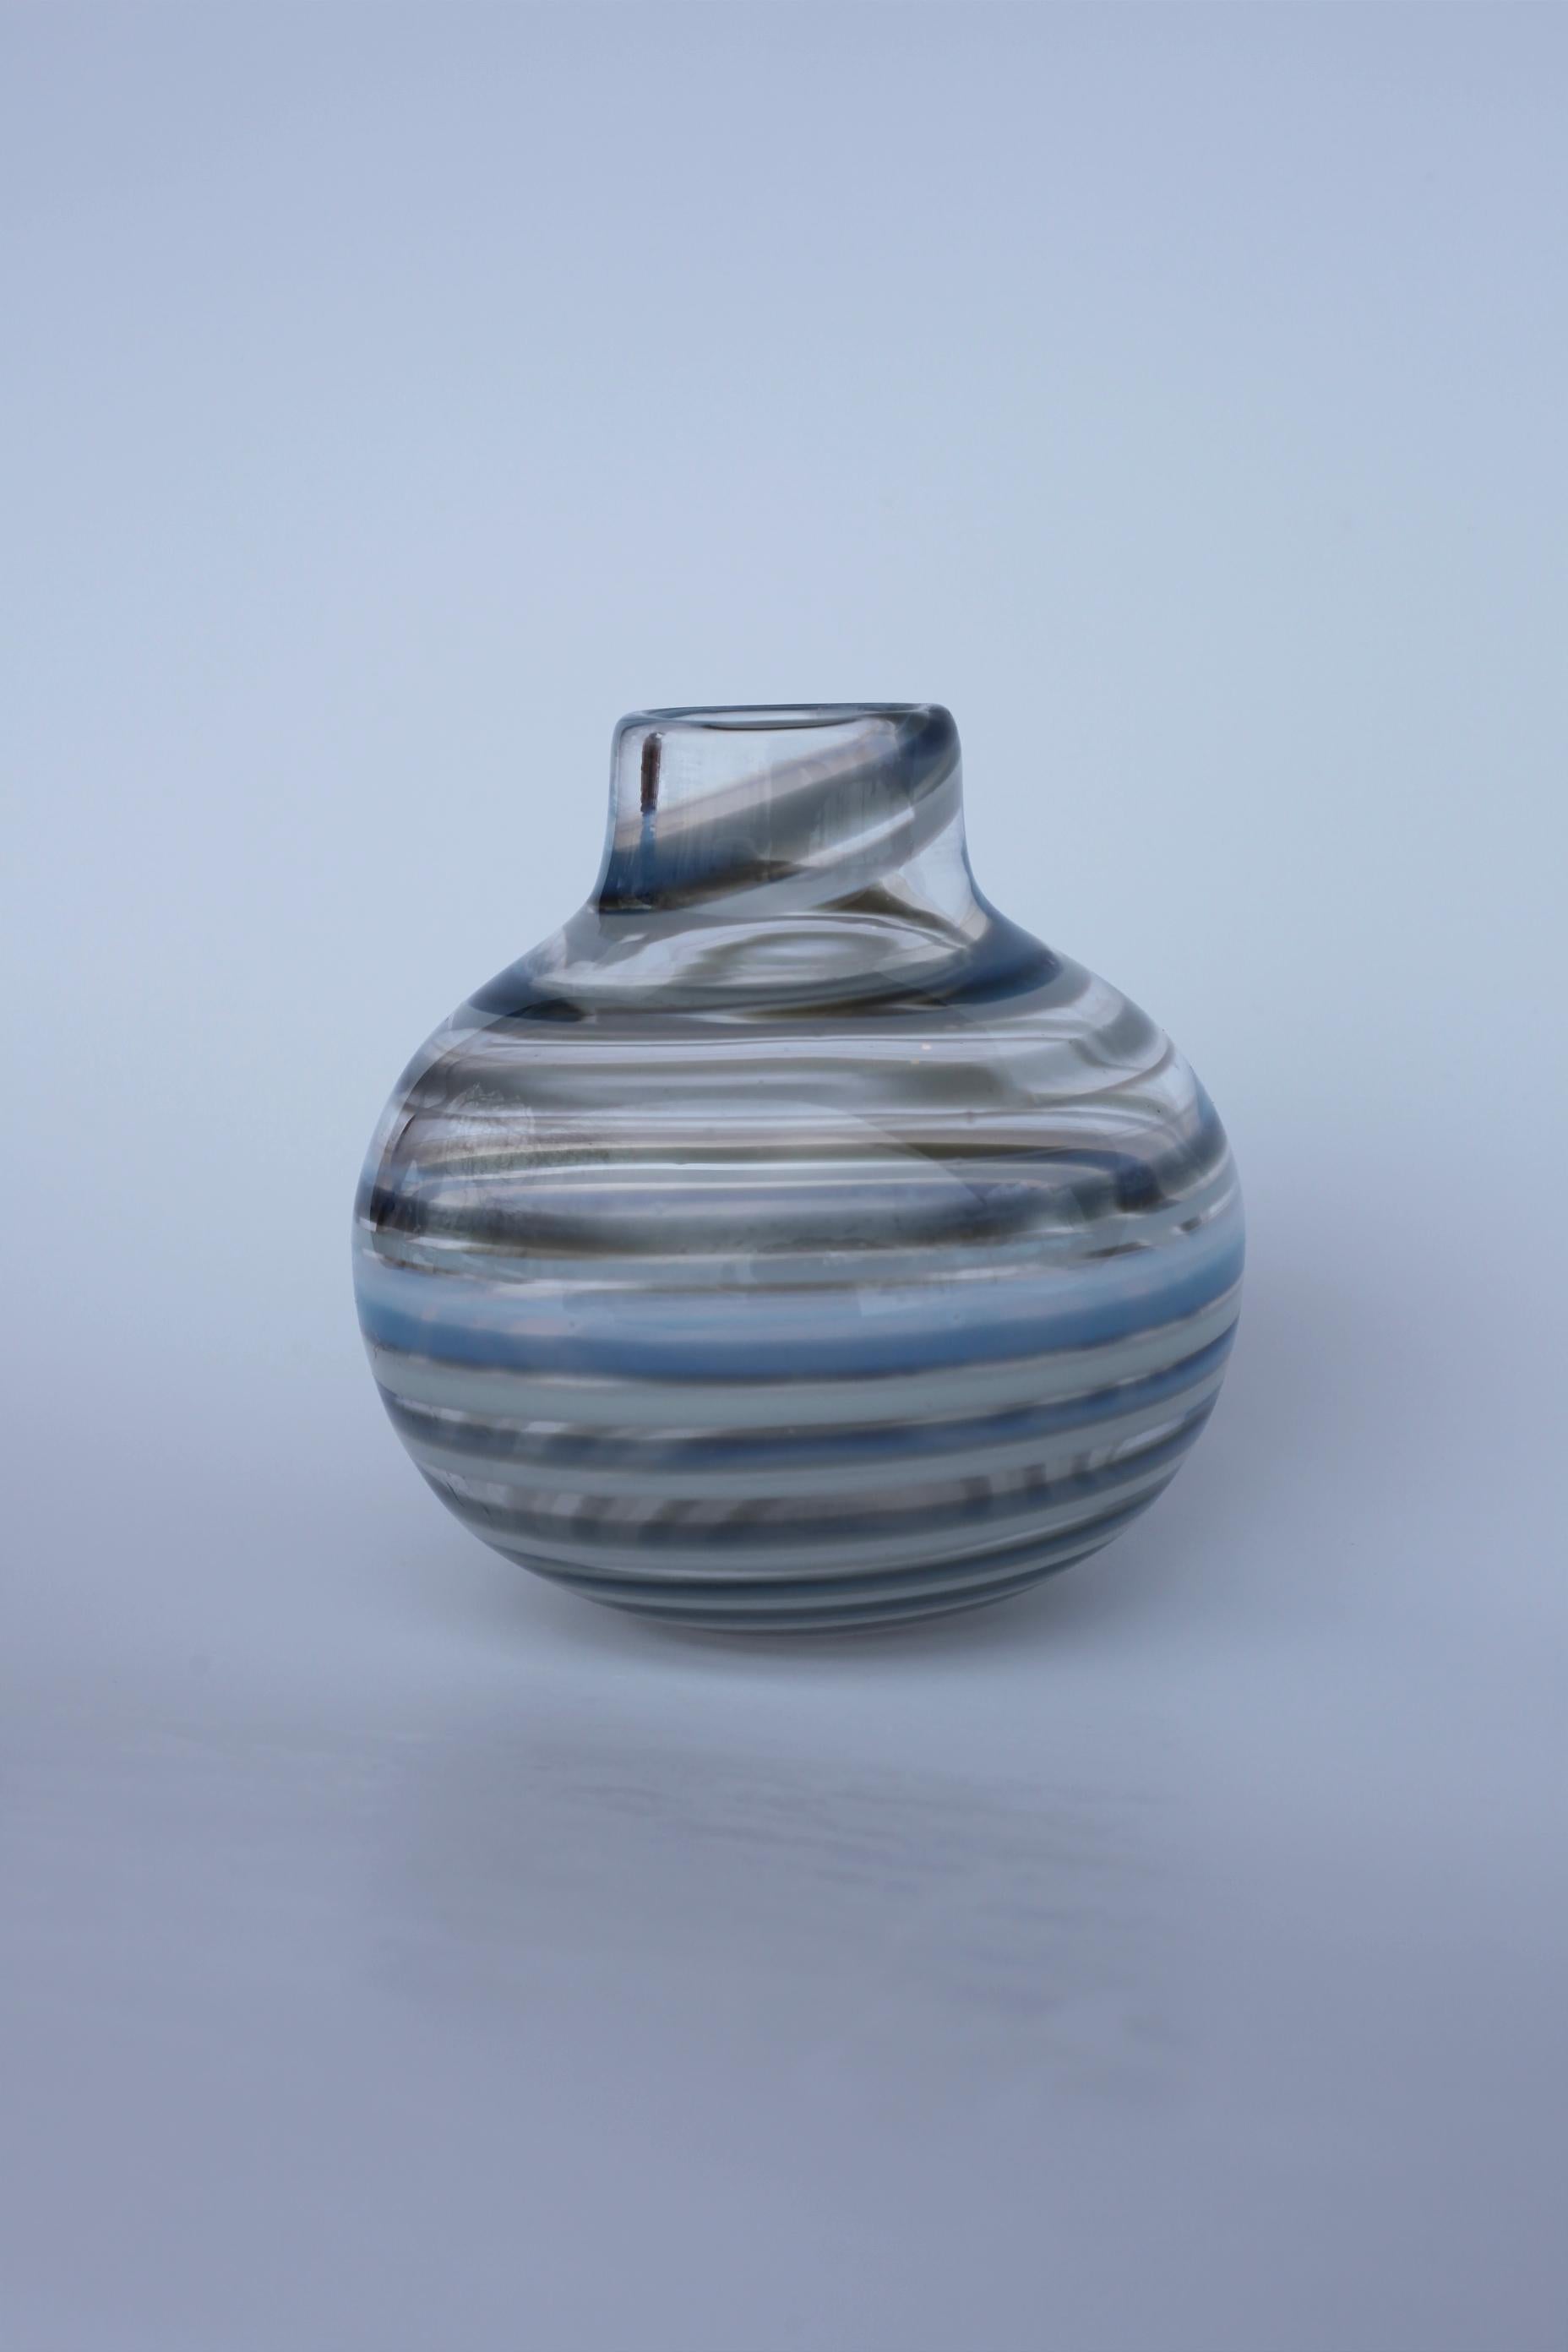 Dies ist ein handgefertigtes Unikat des Künstlers Gunnel Shalin mit der schwedischen Glasfirma Kosta Boda. 

Die Vase ist signiert und in sehr gutem Zustand. 

Keine Mängel oder Risse.